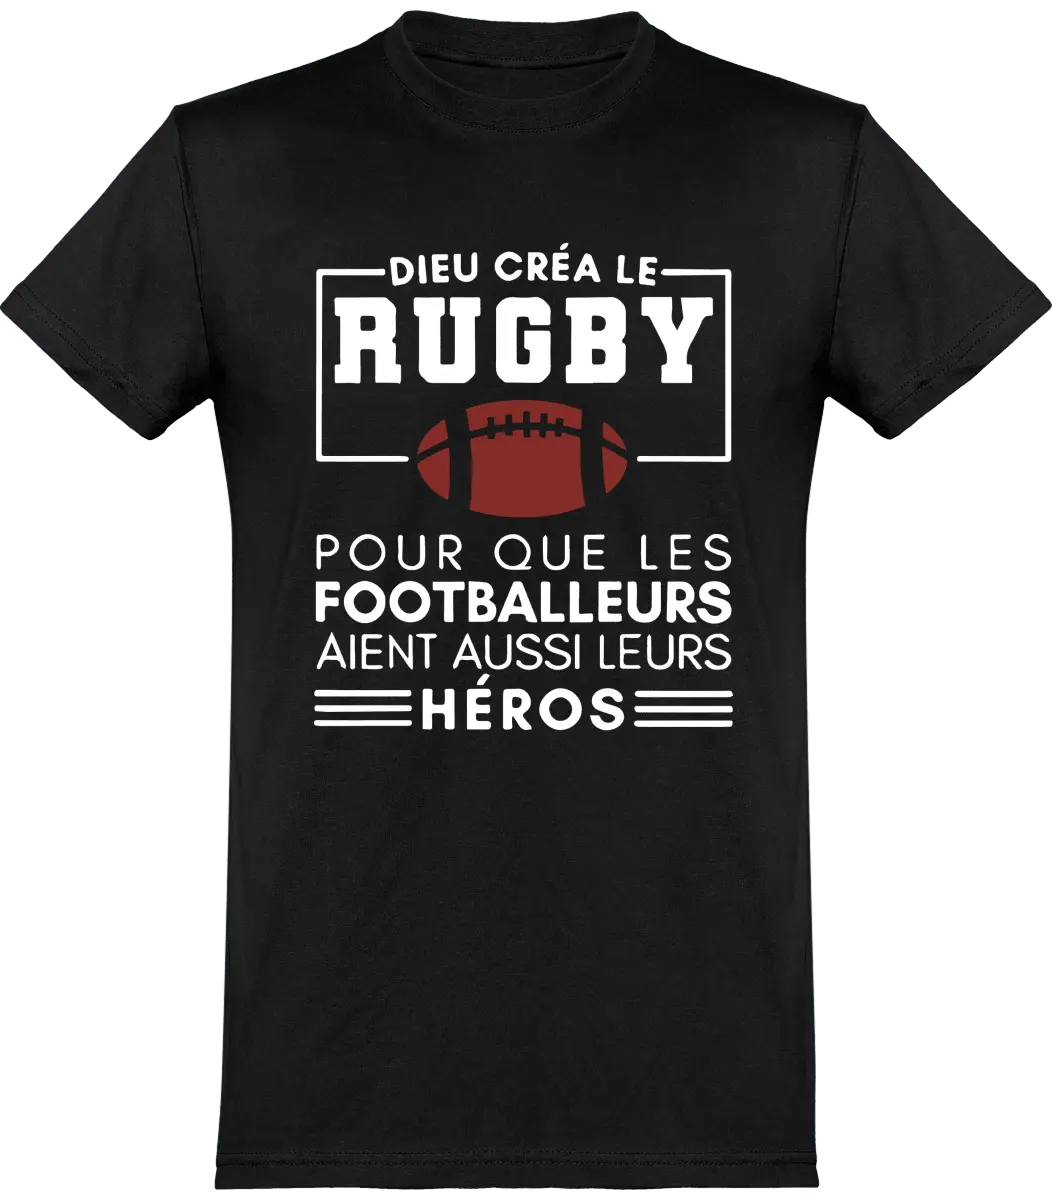 T-shirt Rugby "Dieu créa le rugby pour que les footballeurs aient aussi leurs héros" | Mixte - French Humour